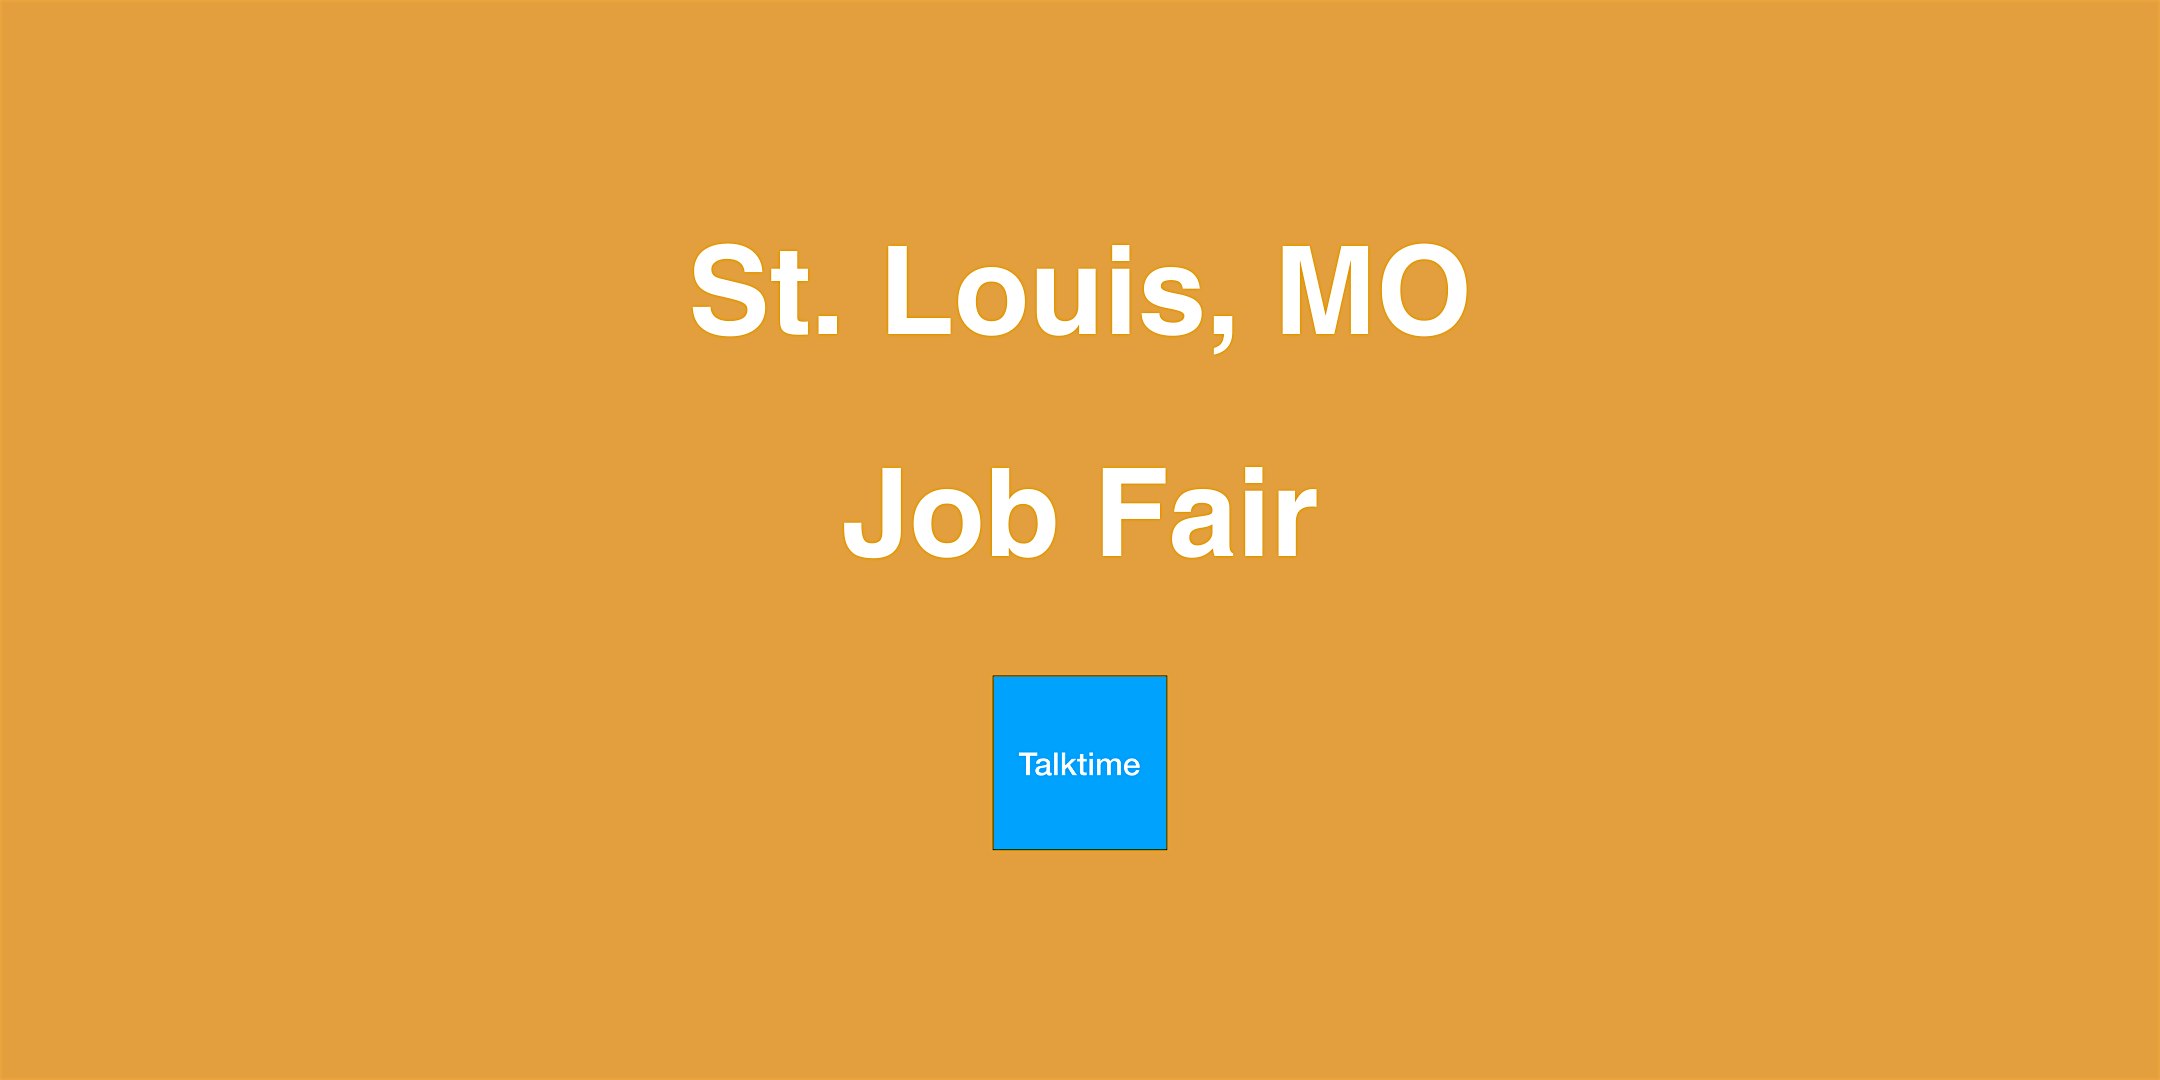 Job Fair - St. Louis